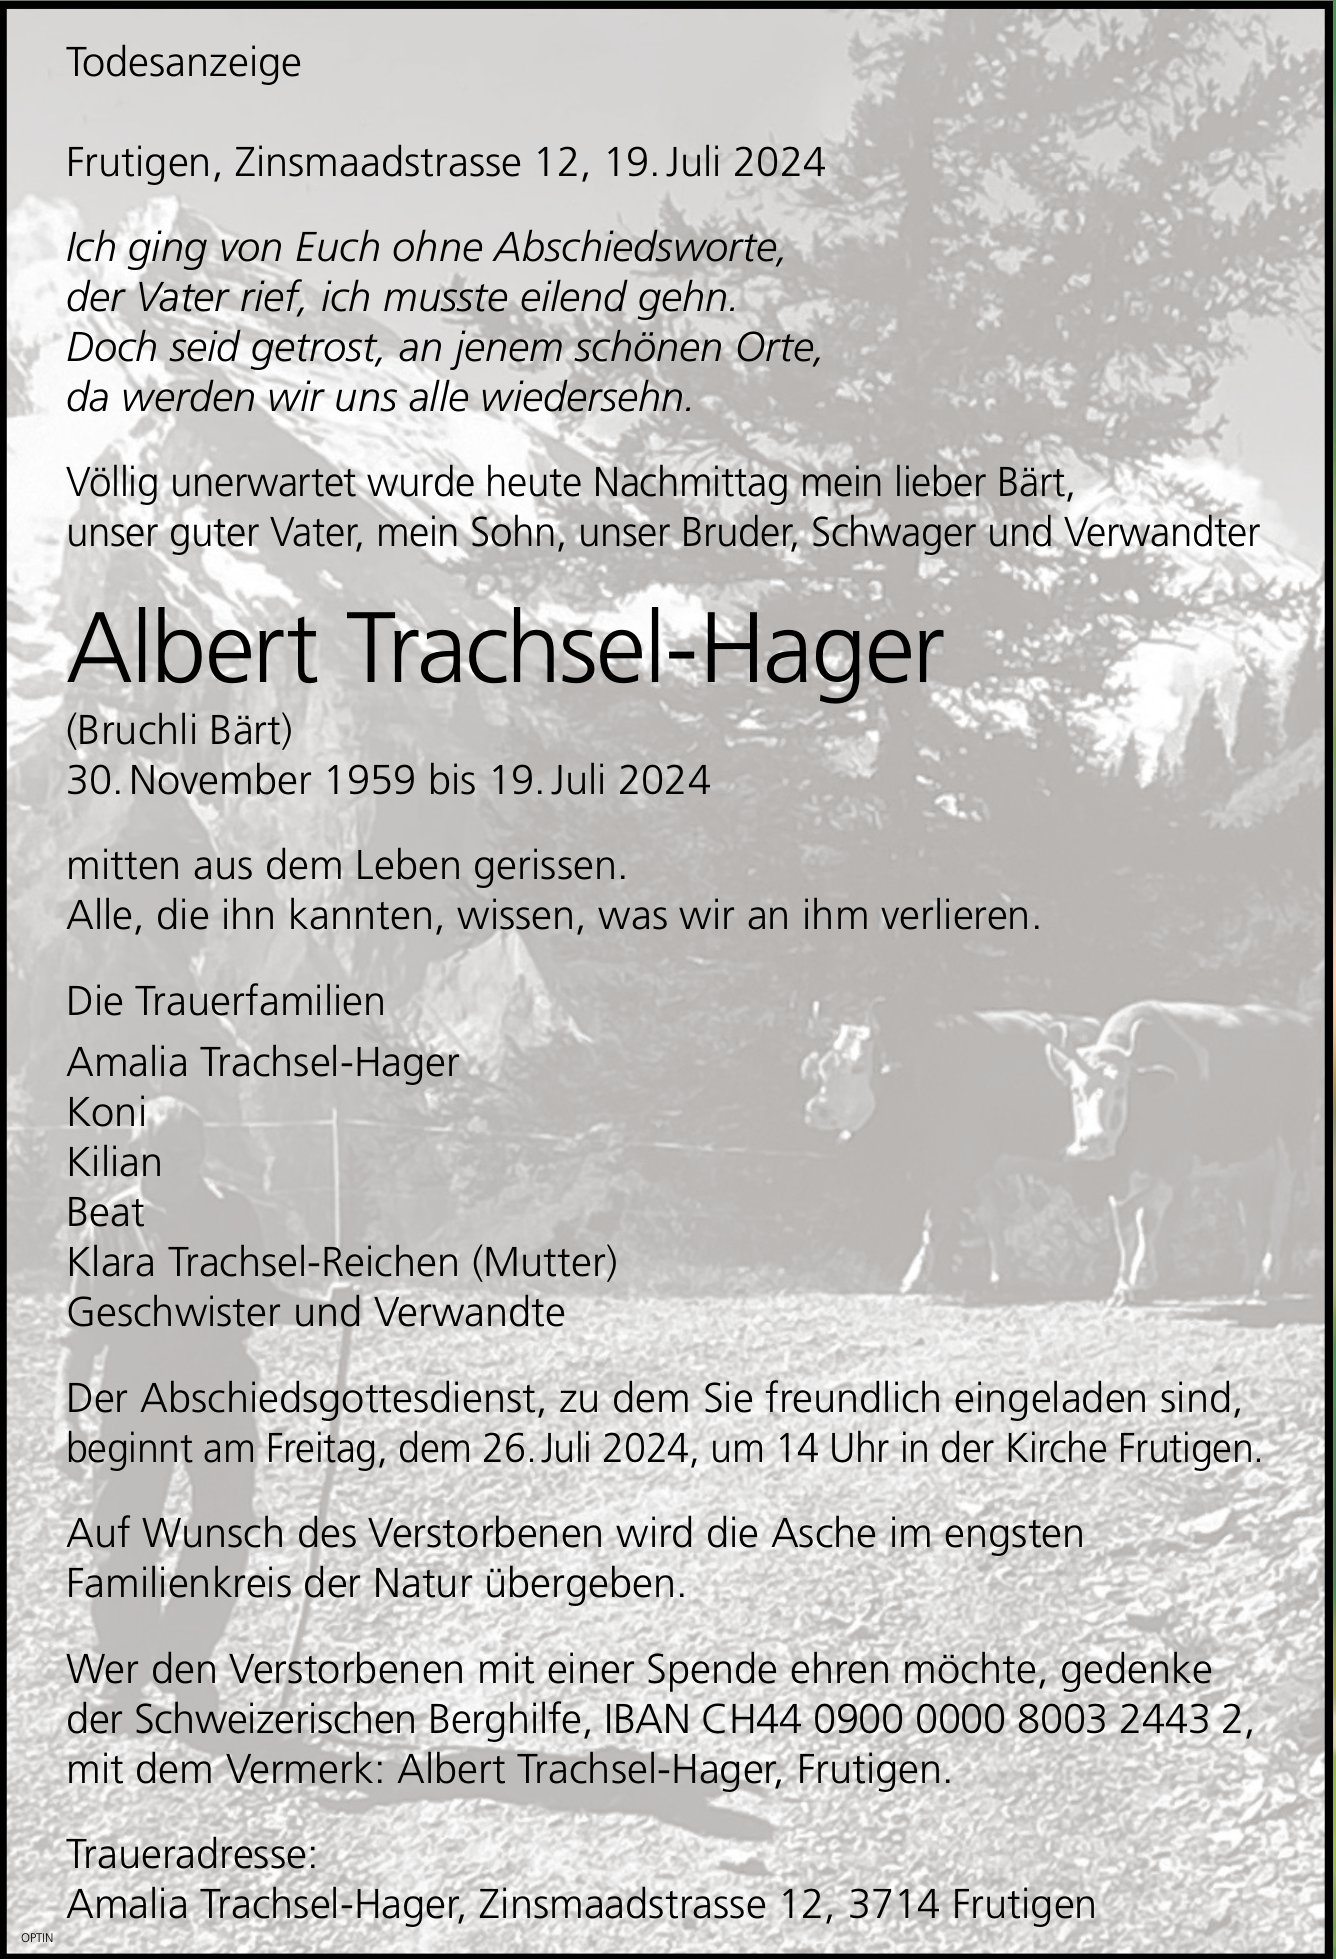 Albert Trachsel-Hager, Juli 2024 / TA